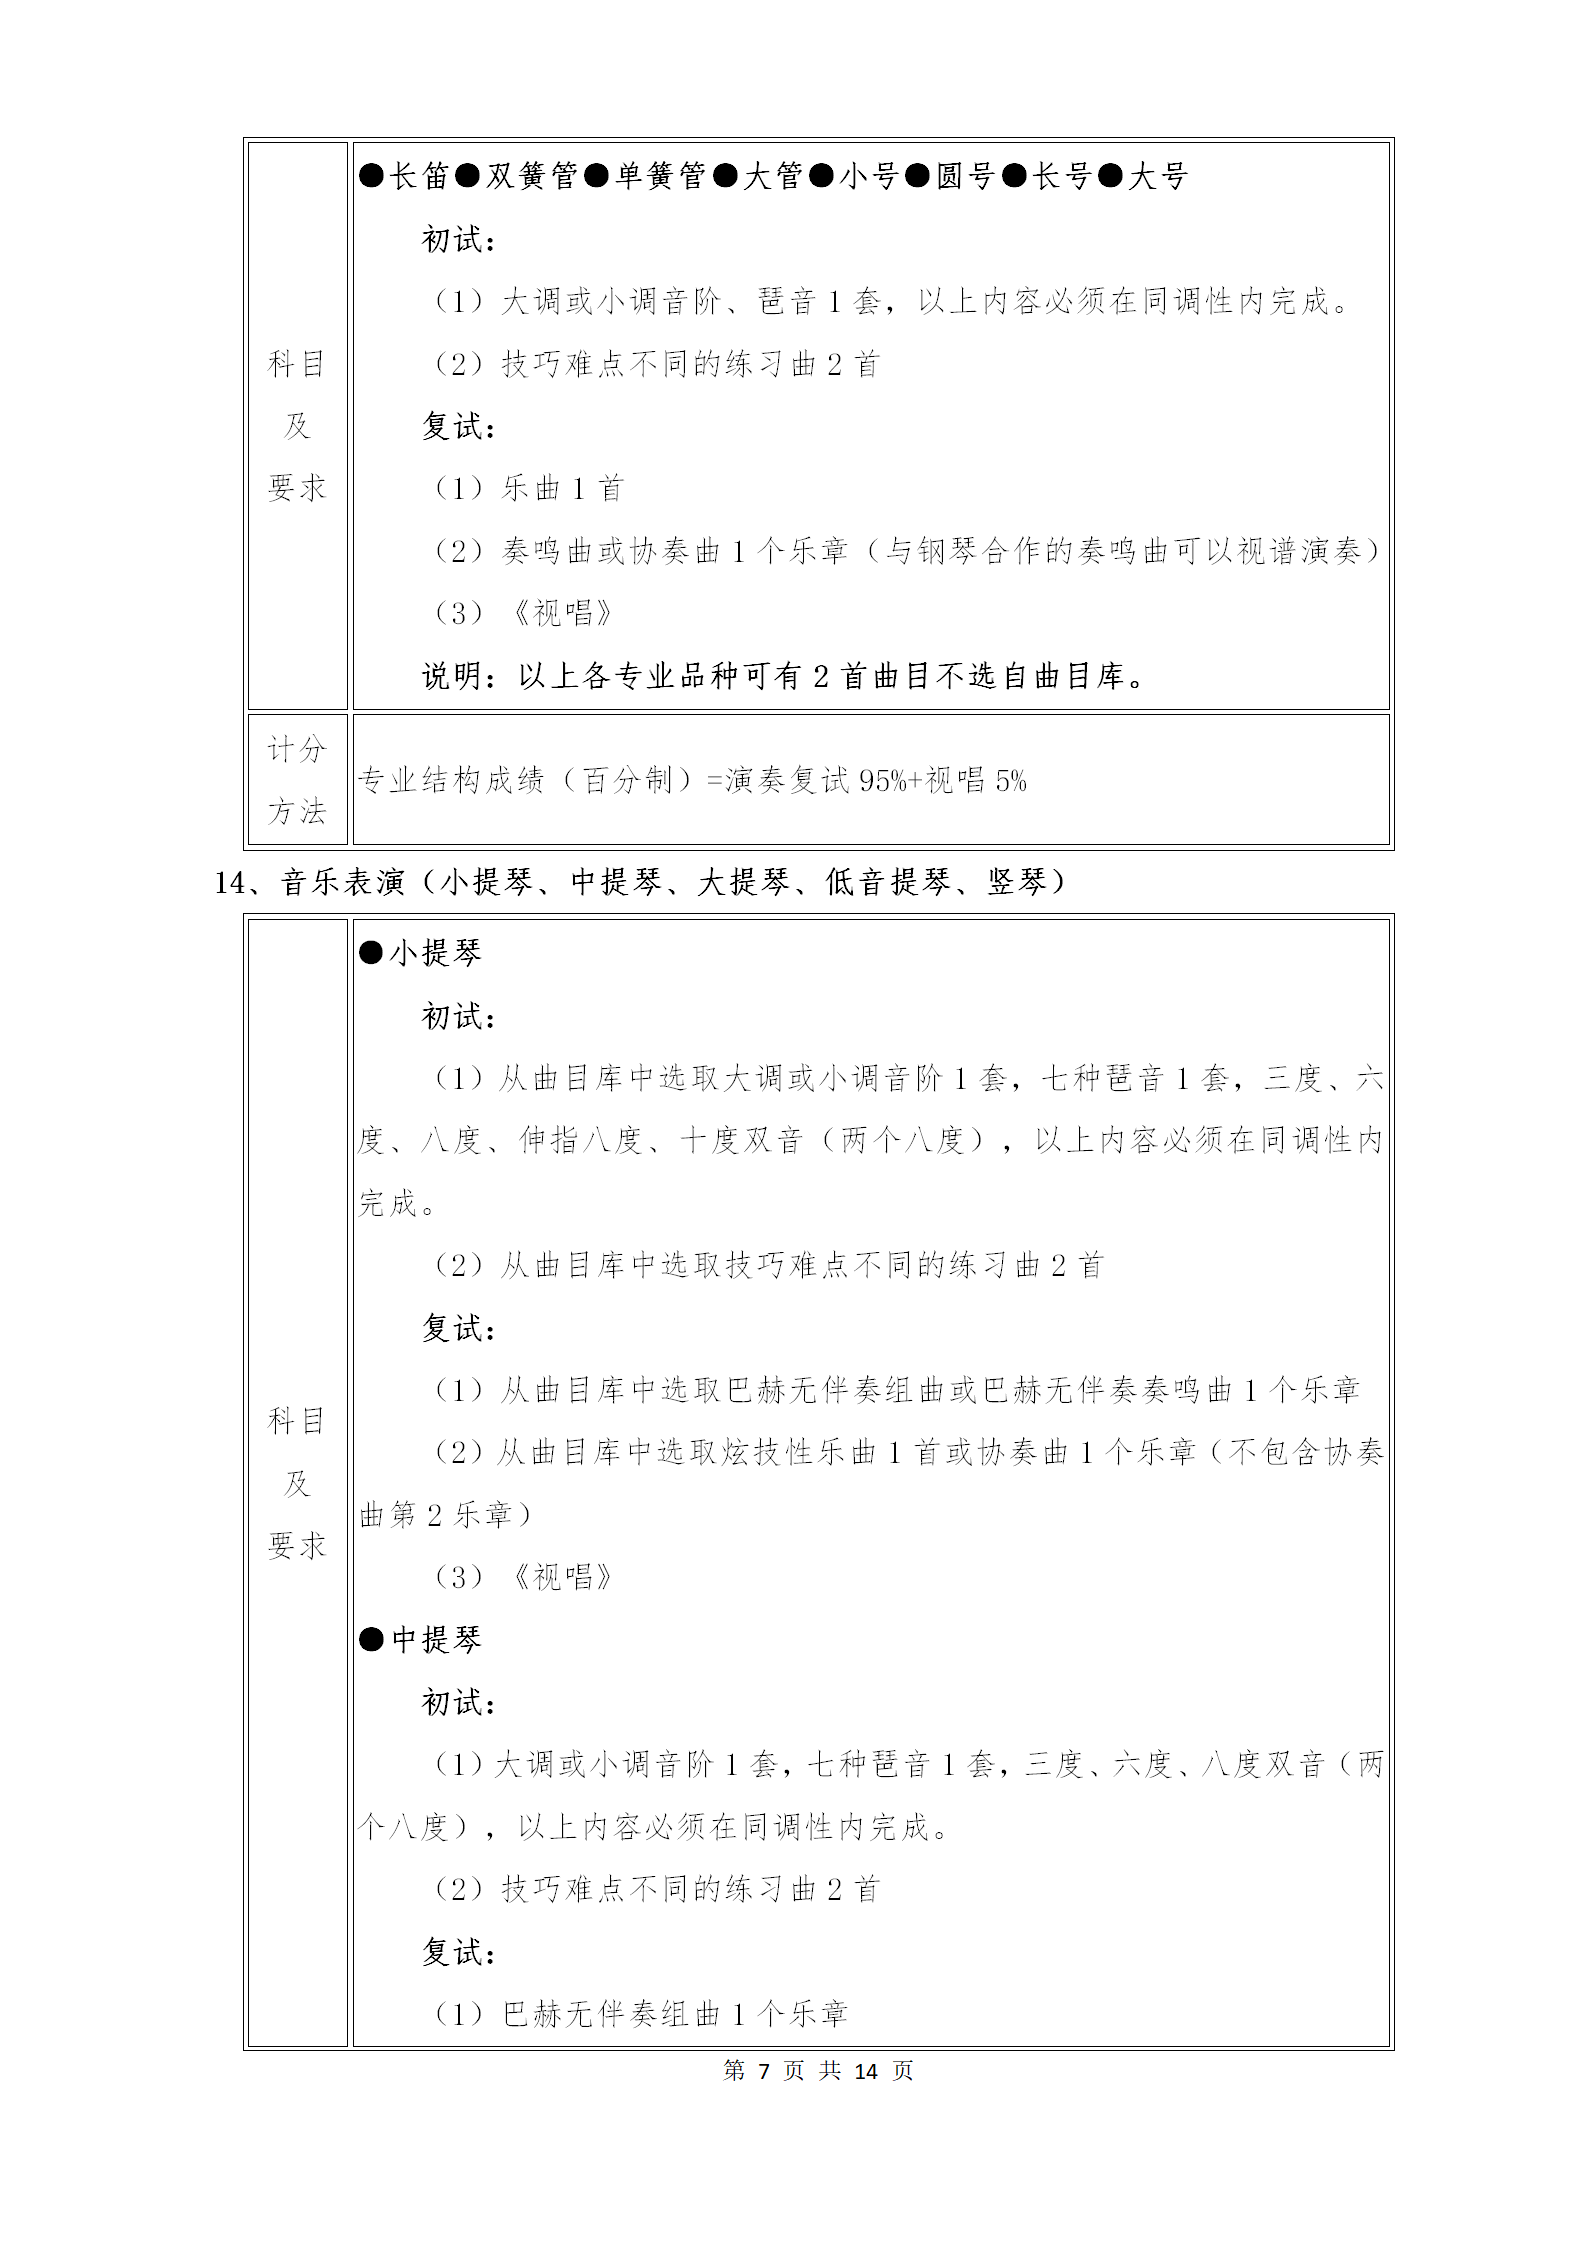 附件1：武汉音乐学院2021年普通本科招生专业考试内容和计分方法（调整版）_07.png